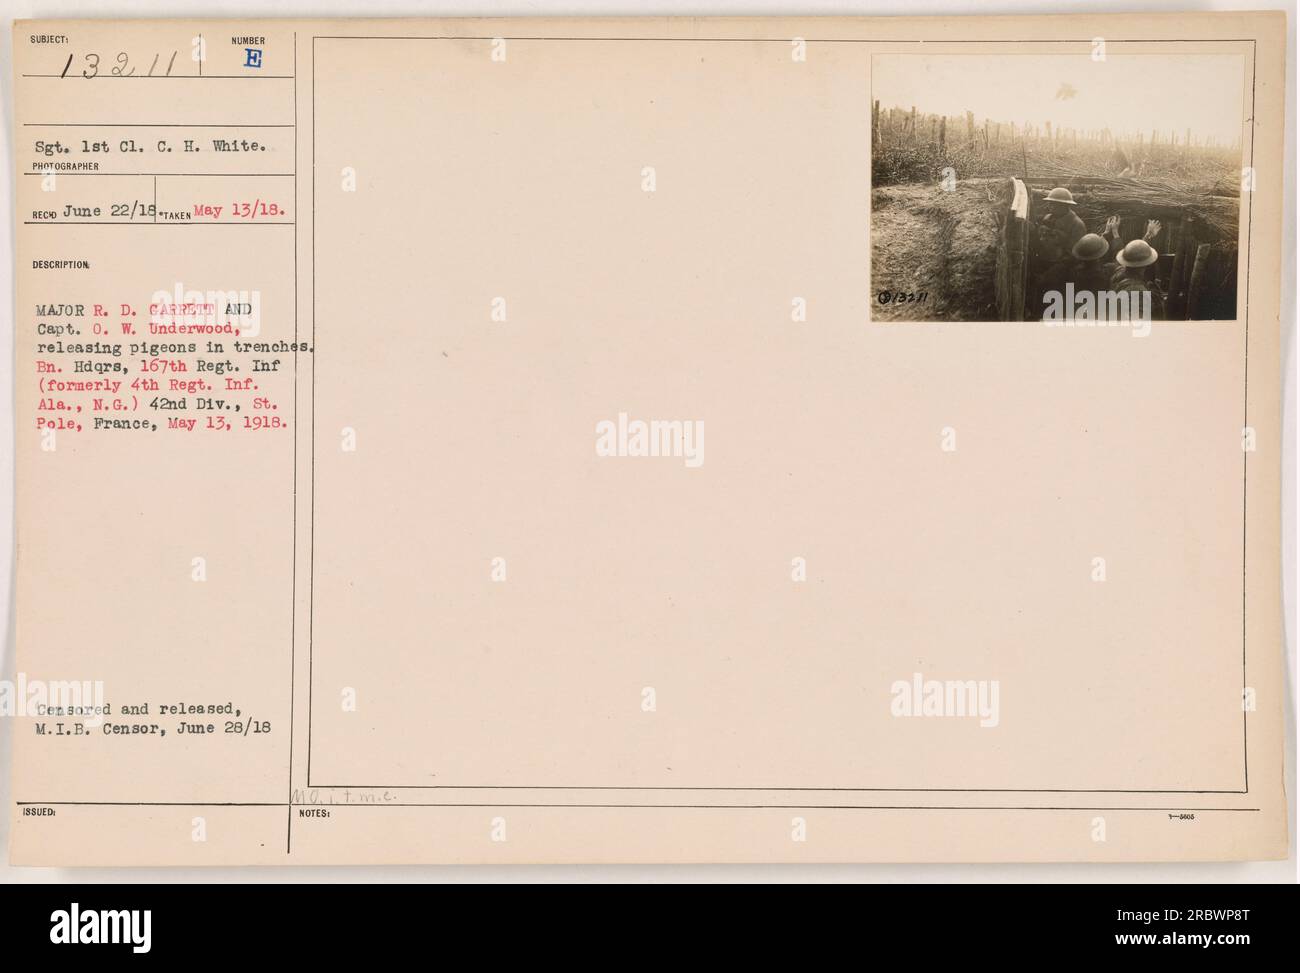 Le major R. D. Garrett (à gauche) et le capitaine O. W. Underwood (à droite) sont vus lâcher des pigeons dans les tranchées de BN. Hdqrs, 167e Régt. INF (anciennement 4th Regt. INF. Ala., N.G.) de la 42e Division à St. Pôle, France le 13 mai 1918. L'image a été censurée et diffusée par le M.I.B. Censurer le 28 juin 1918. Banque D'Images